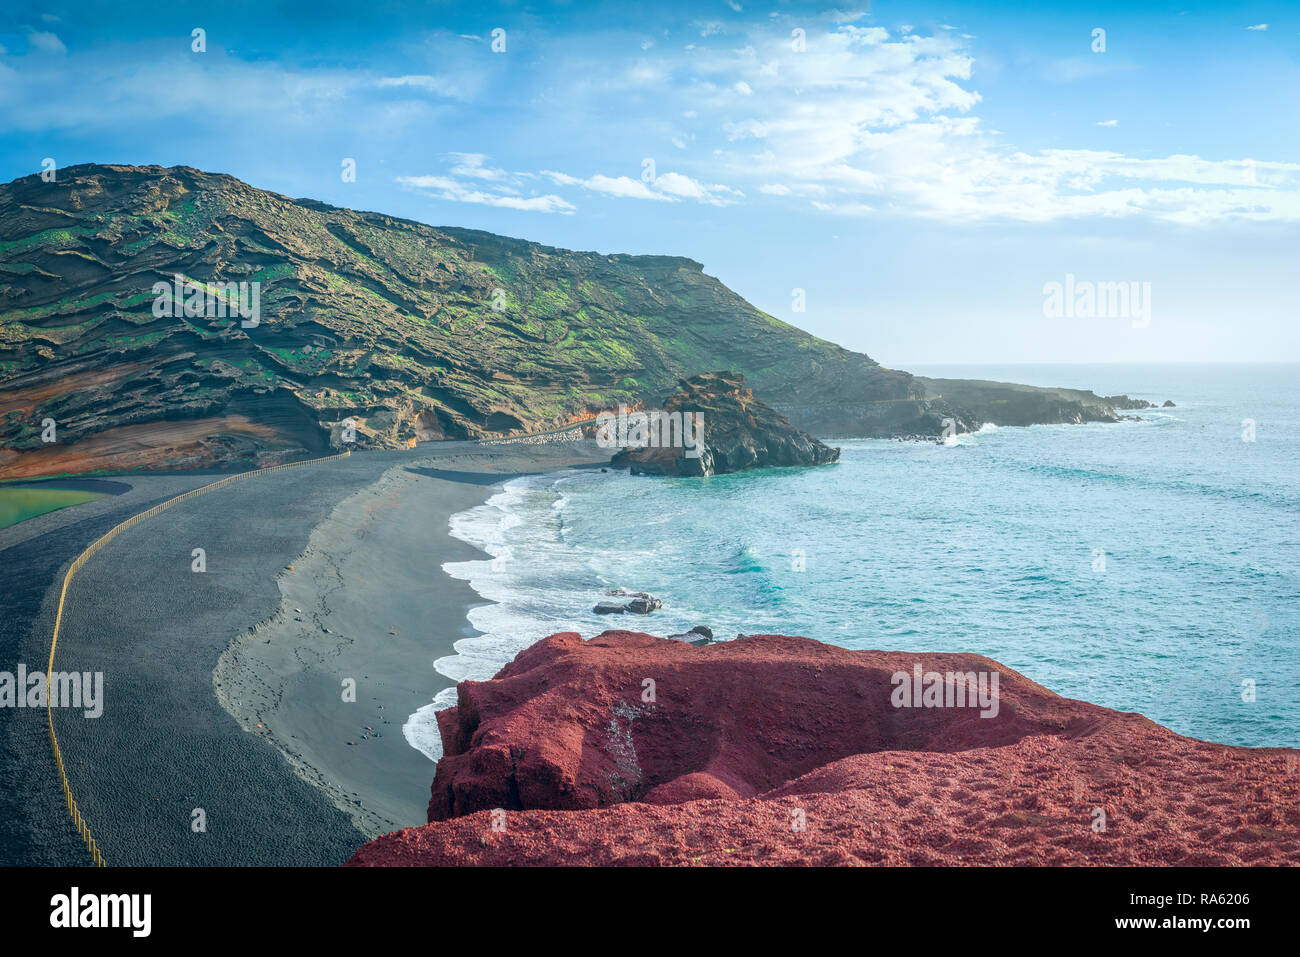 Il fantastico paesaggio di El Golfo sull'isola di Lanzarote, formata da attività vulcanica durante la creazione dell'isola. Foto Stock